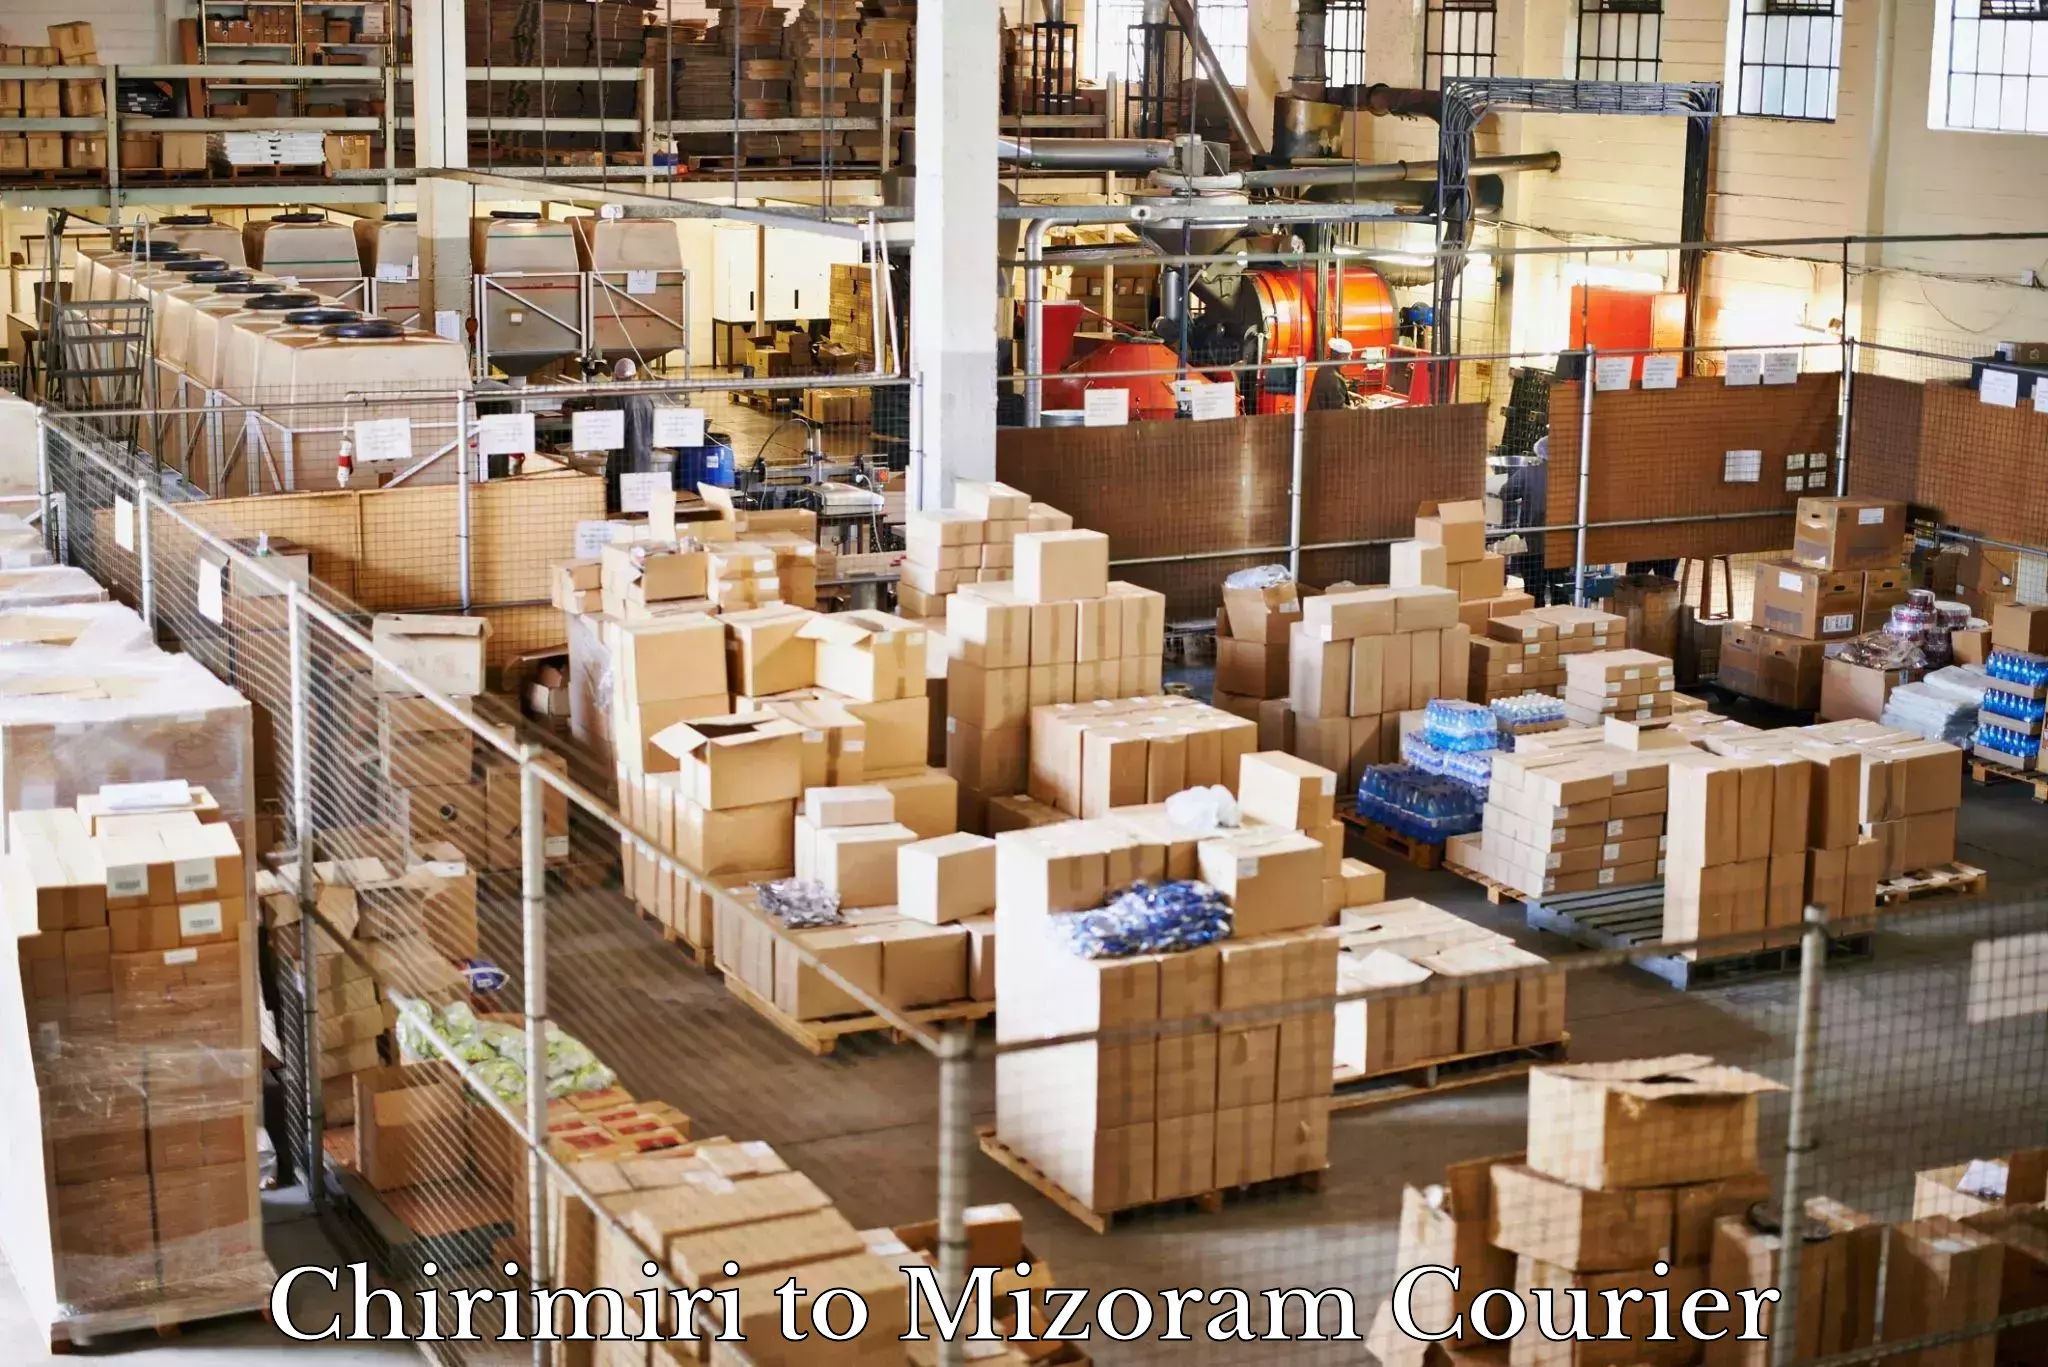 Home goods moving company Chirimiri to Mizoram